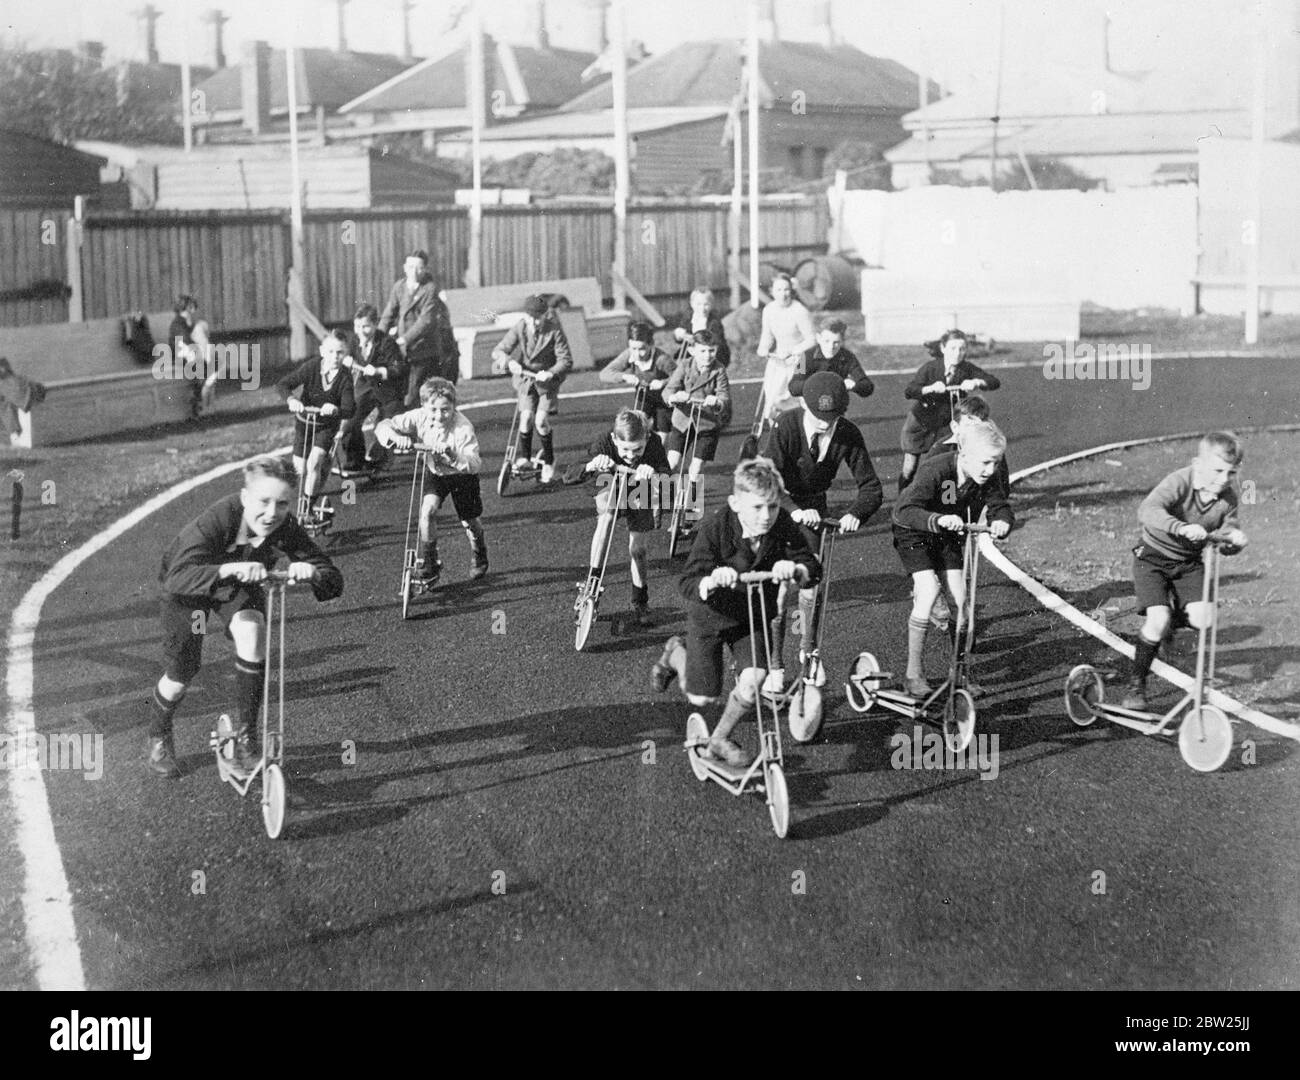 Le scooter de course est livré avec une grande renaissance. Le retour à la popularité du Scooter à Melbourne, en Australie, a été si rapide et si complet qu'un circuit spécial Scooter a été construit. Les courses sont organisées régulièrement pour les enfants âgés de 4 à 40 ans. Photos, course en cours sur le circuit Scooter à Melbourne. 29 janvier 1938 Banque D'Images